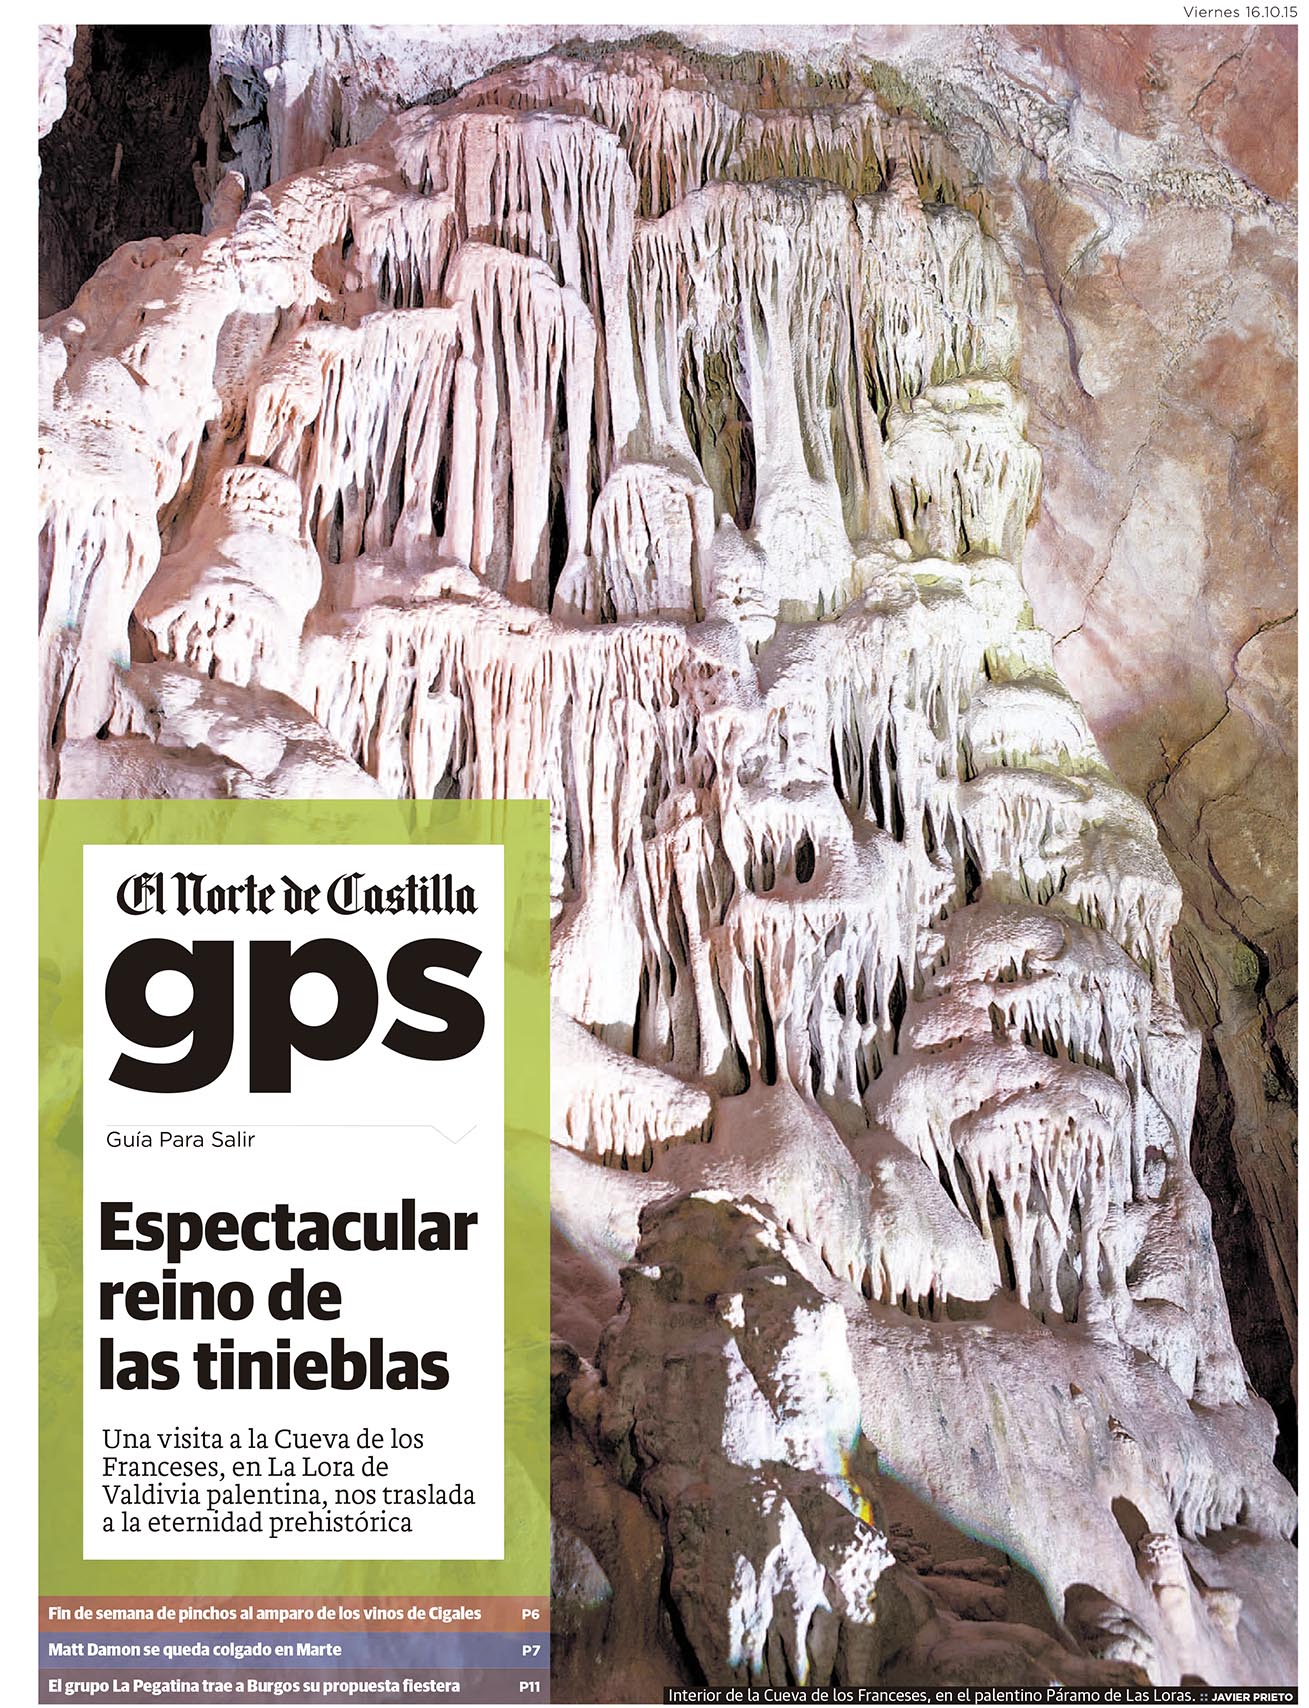 La Cueva de los Franceses. Reportaje publicado por Javier Prieto Gallego en el periódico EL NORTE DE CASTILLA.